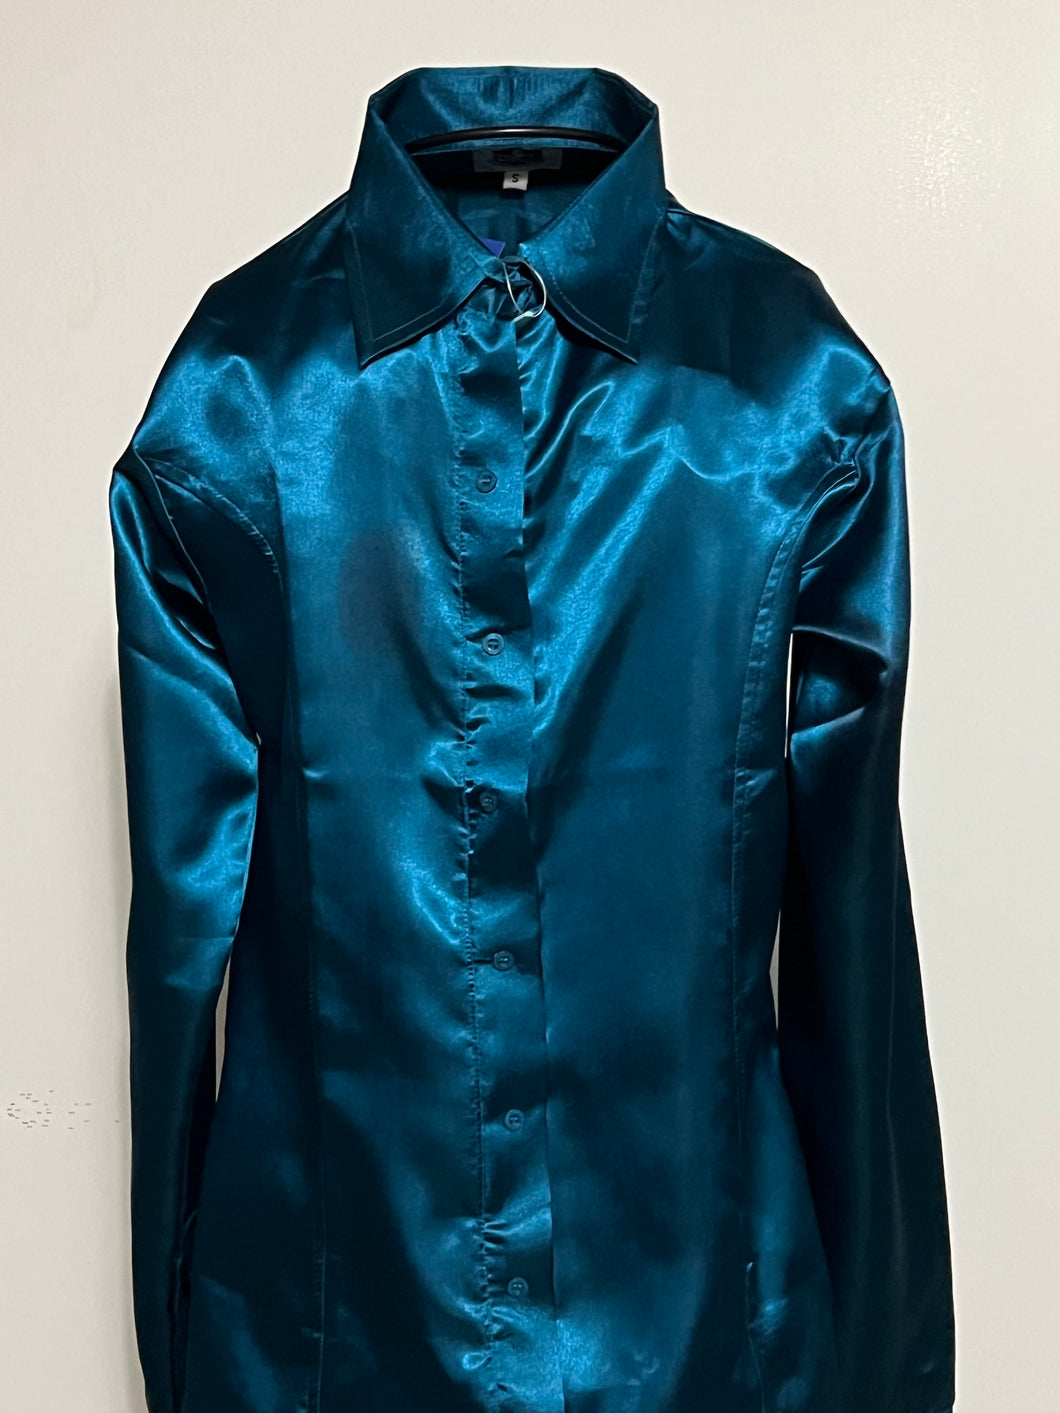 Hidden Zipper Sateen 100% Polyester Shirts Vivid Colors